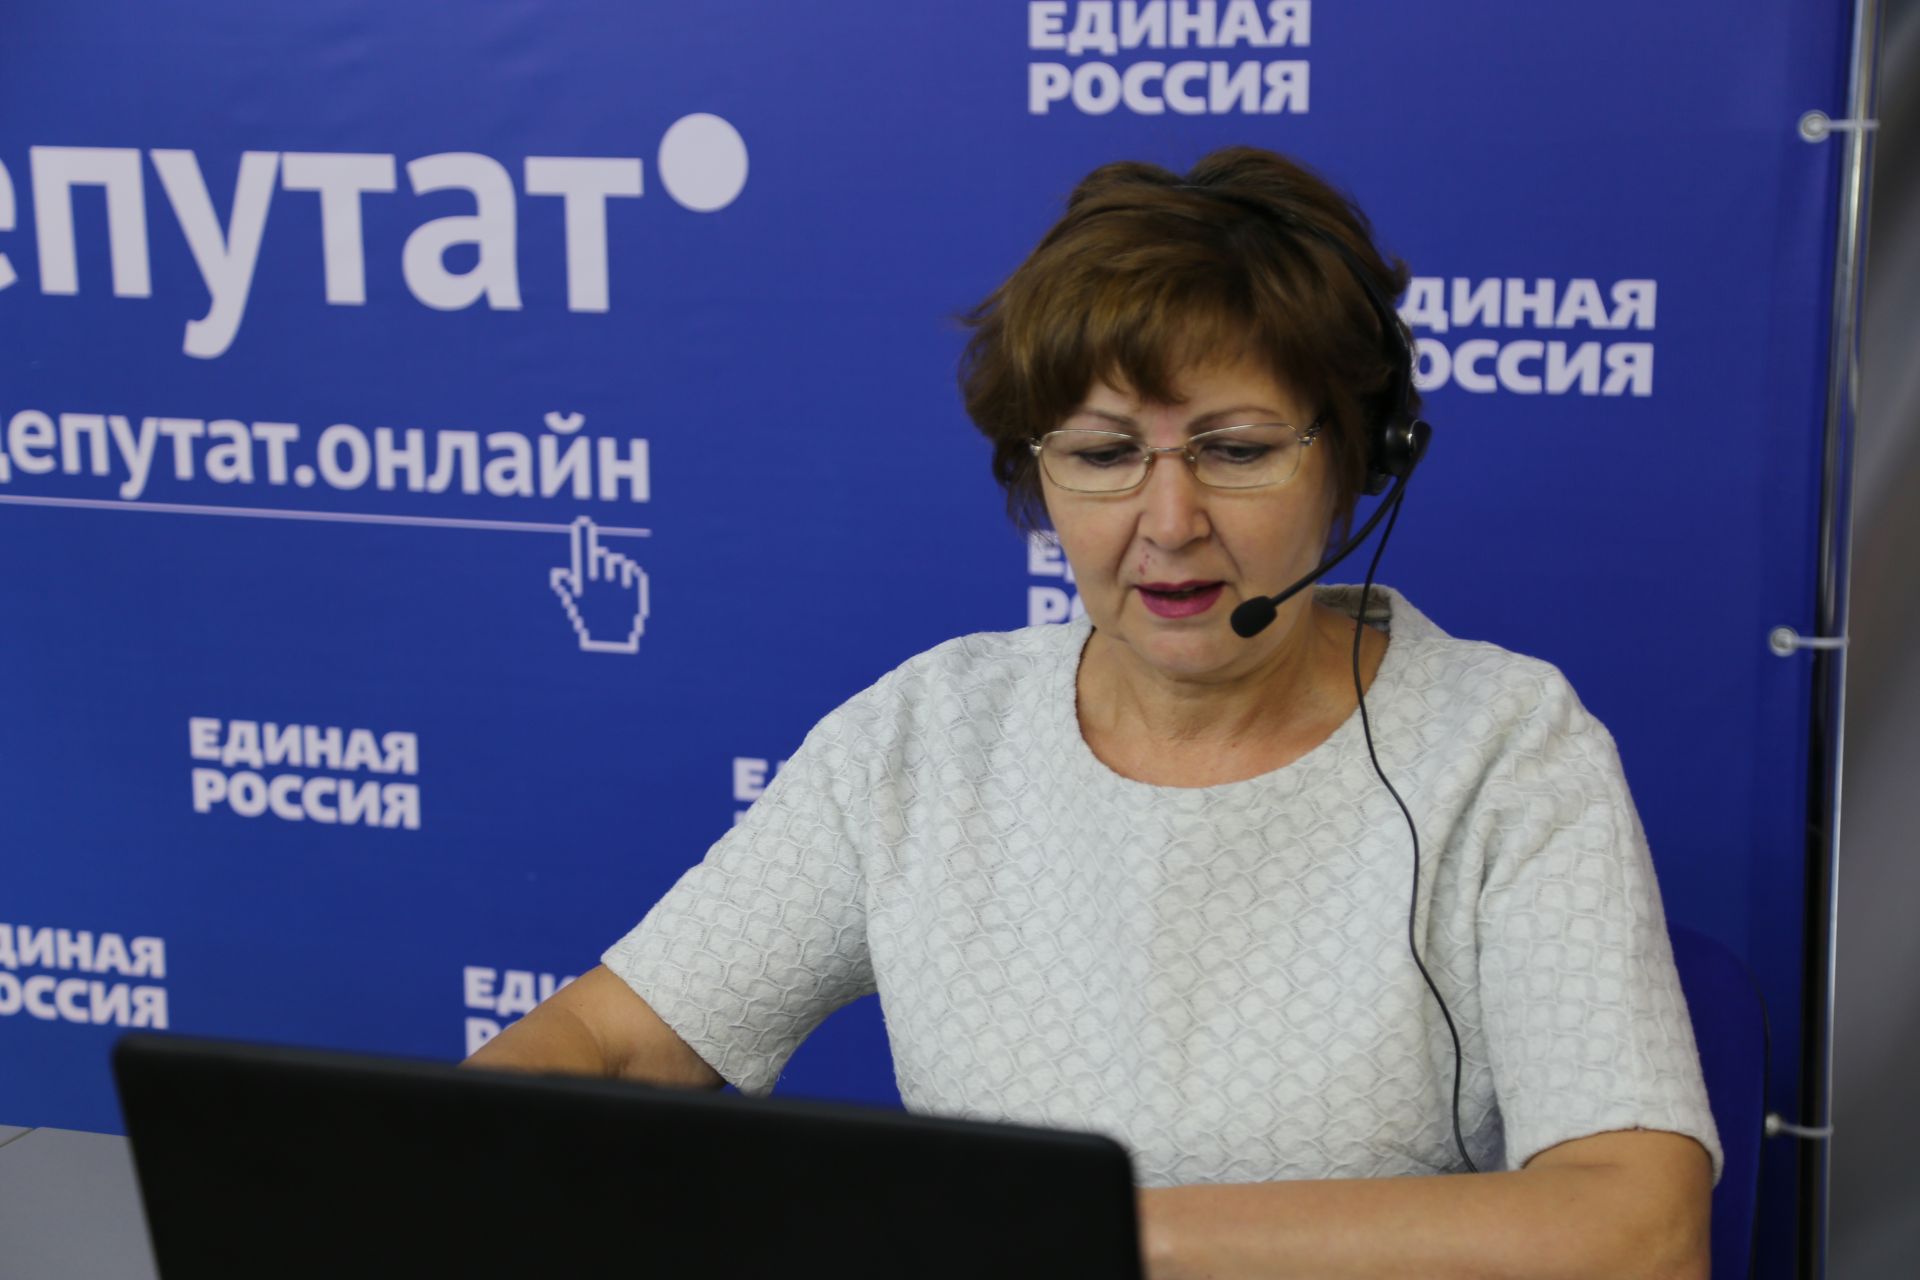 Татарстанская «Единая Россия» создала ситуационный центр для мобилизации перед выборами в Госсовет РТ